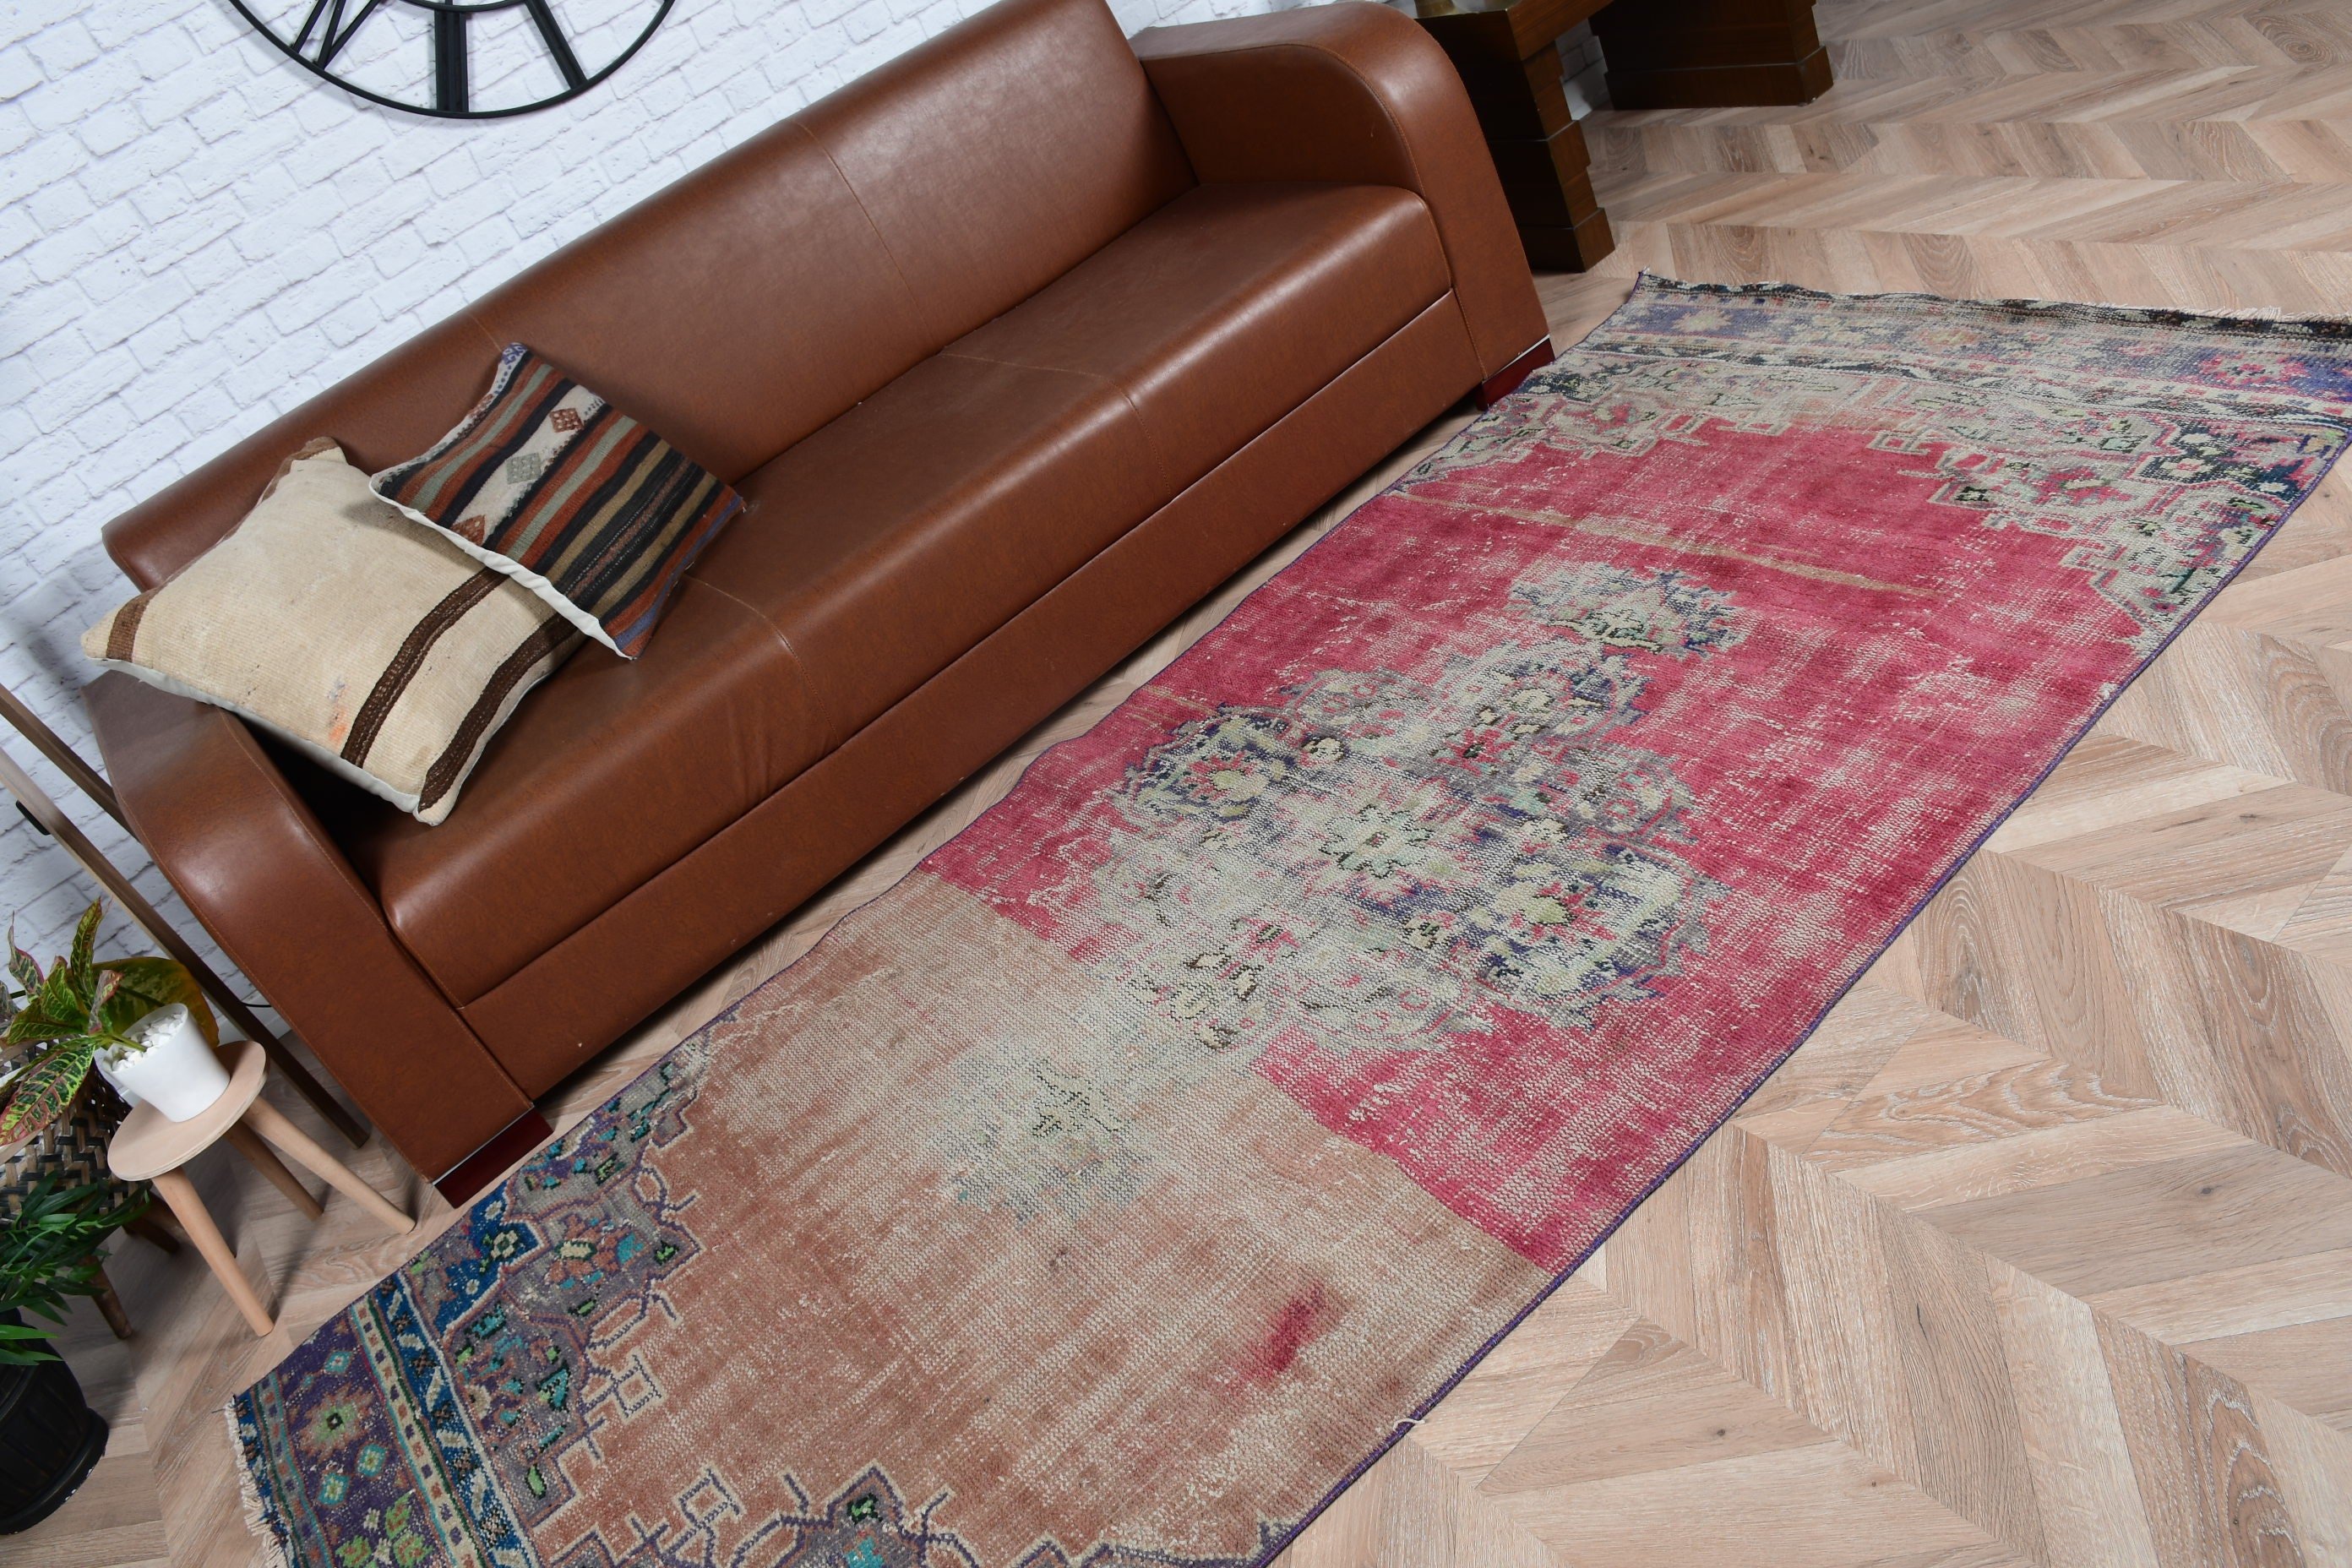 Floor Rug, Red Bedroom Rug, Turkish Rug, Oriental Rug, Rugs for Living Room, 3.7x8.5 ft Area Rug, Vintage Rugs, Aesthetic Rug, Oushak Rug